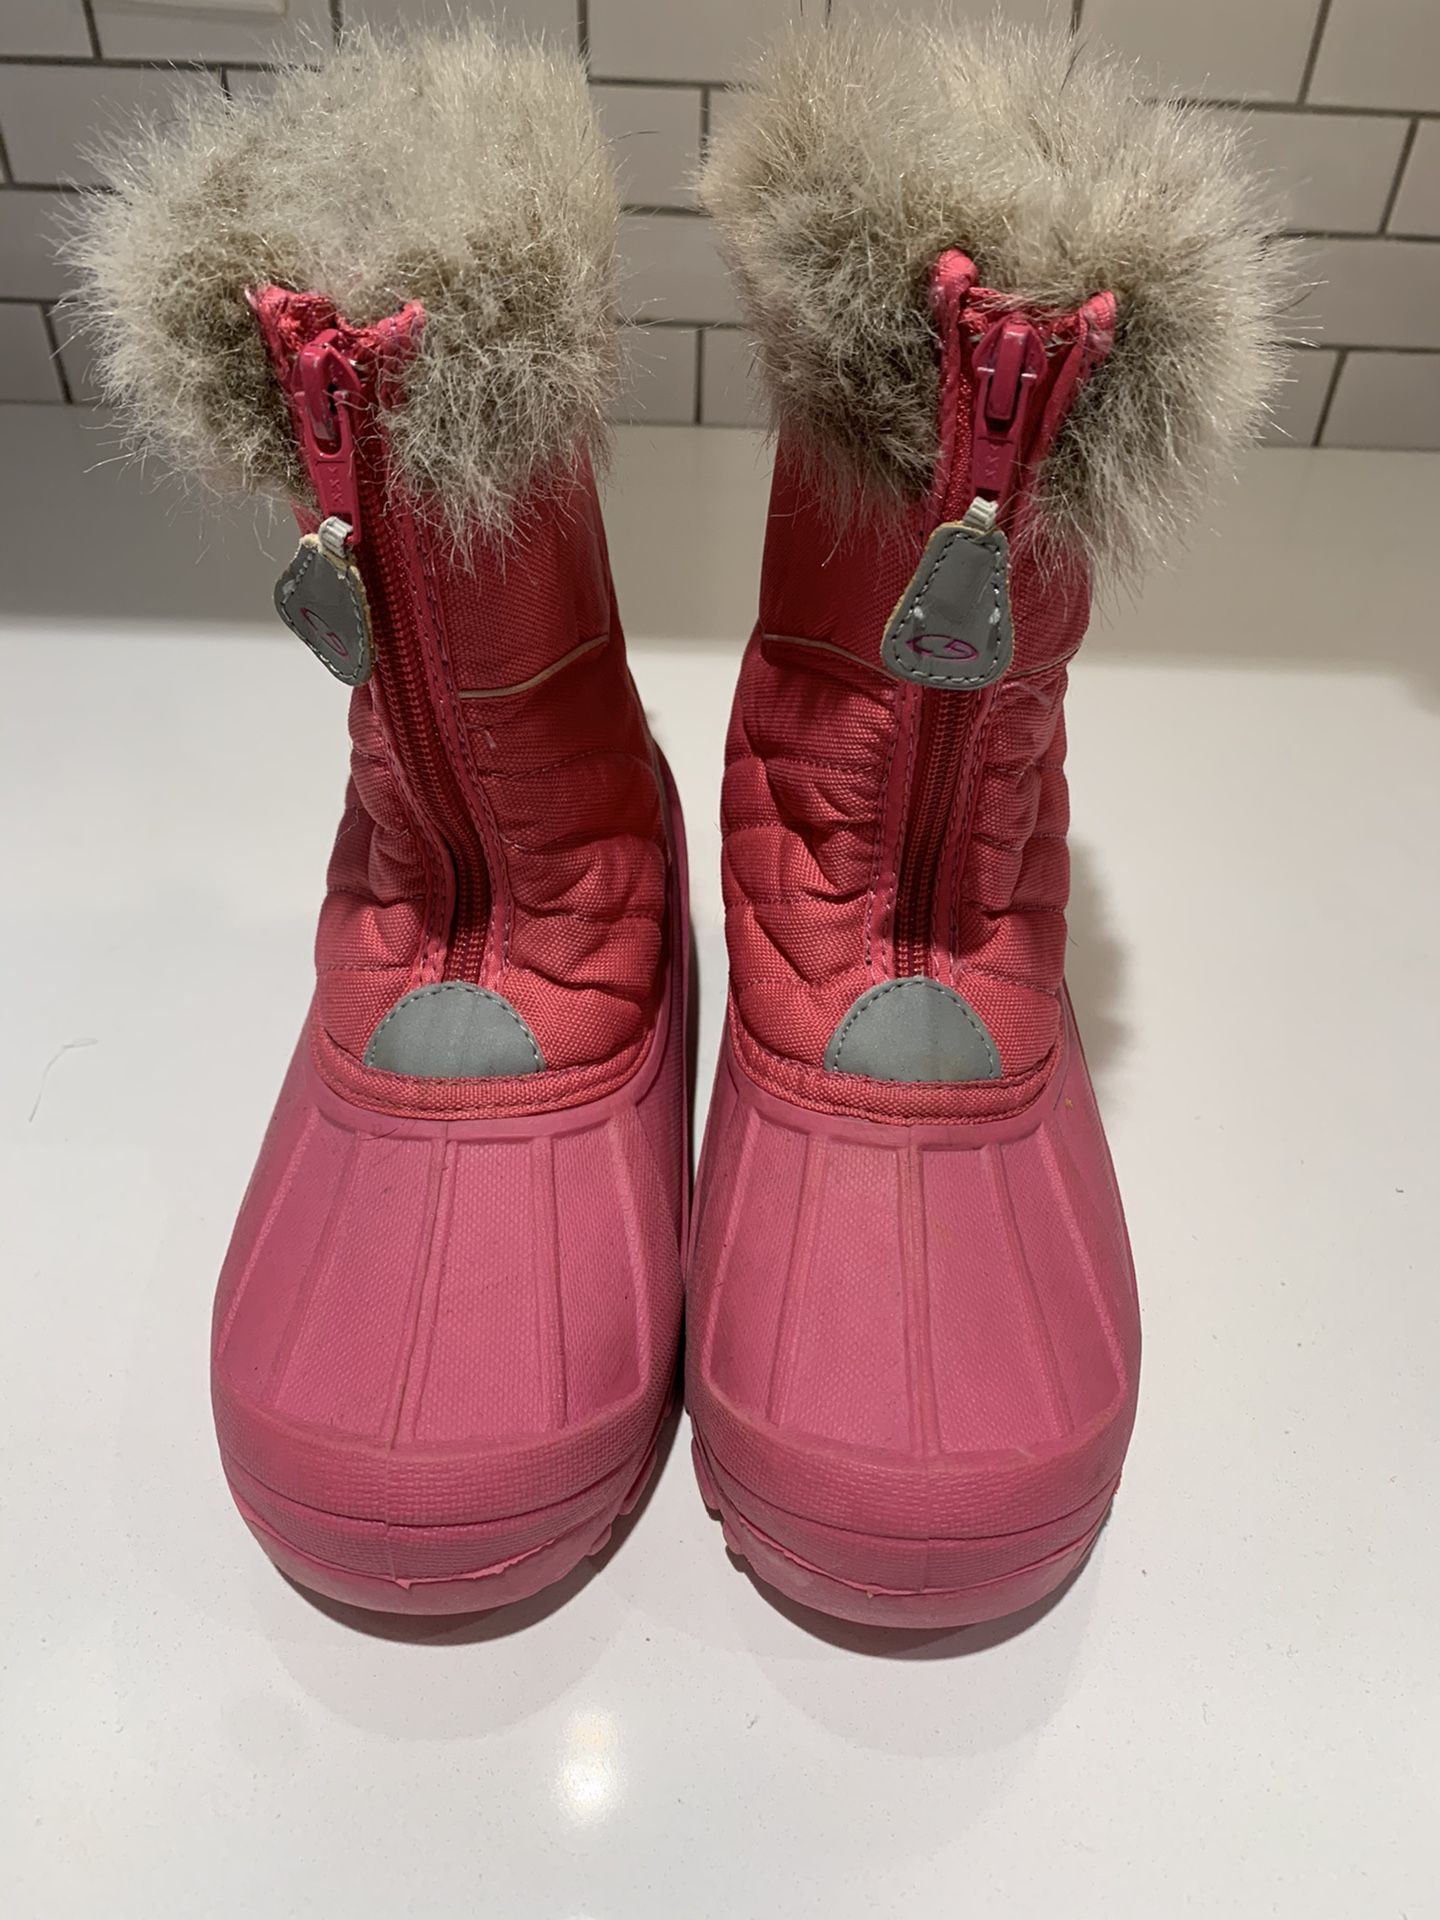 Little Girls snow boots sz. 2